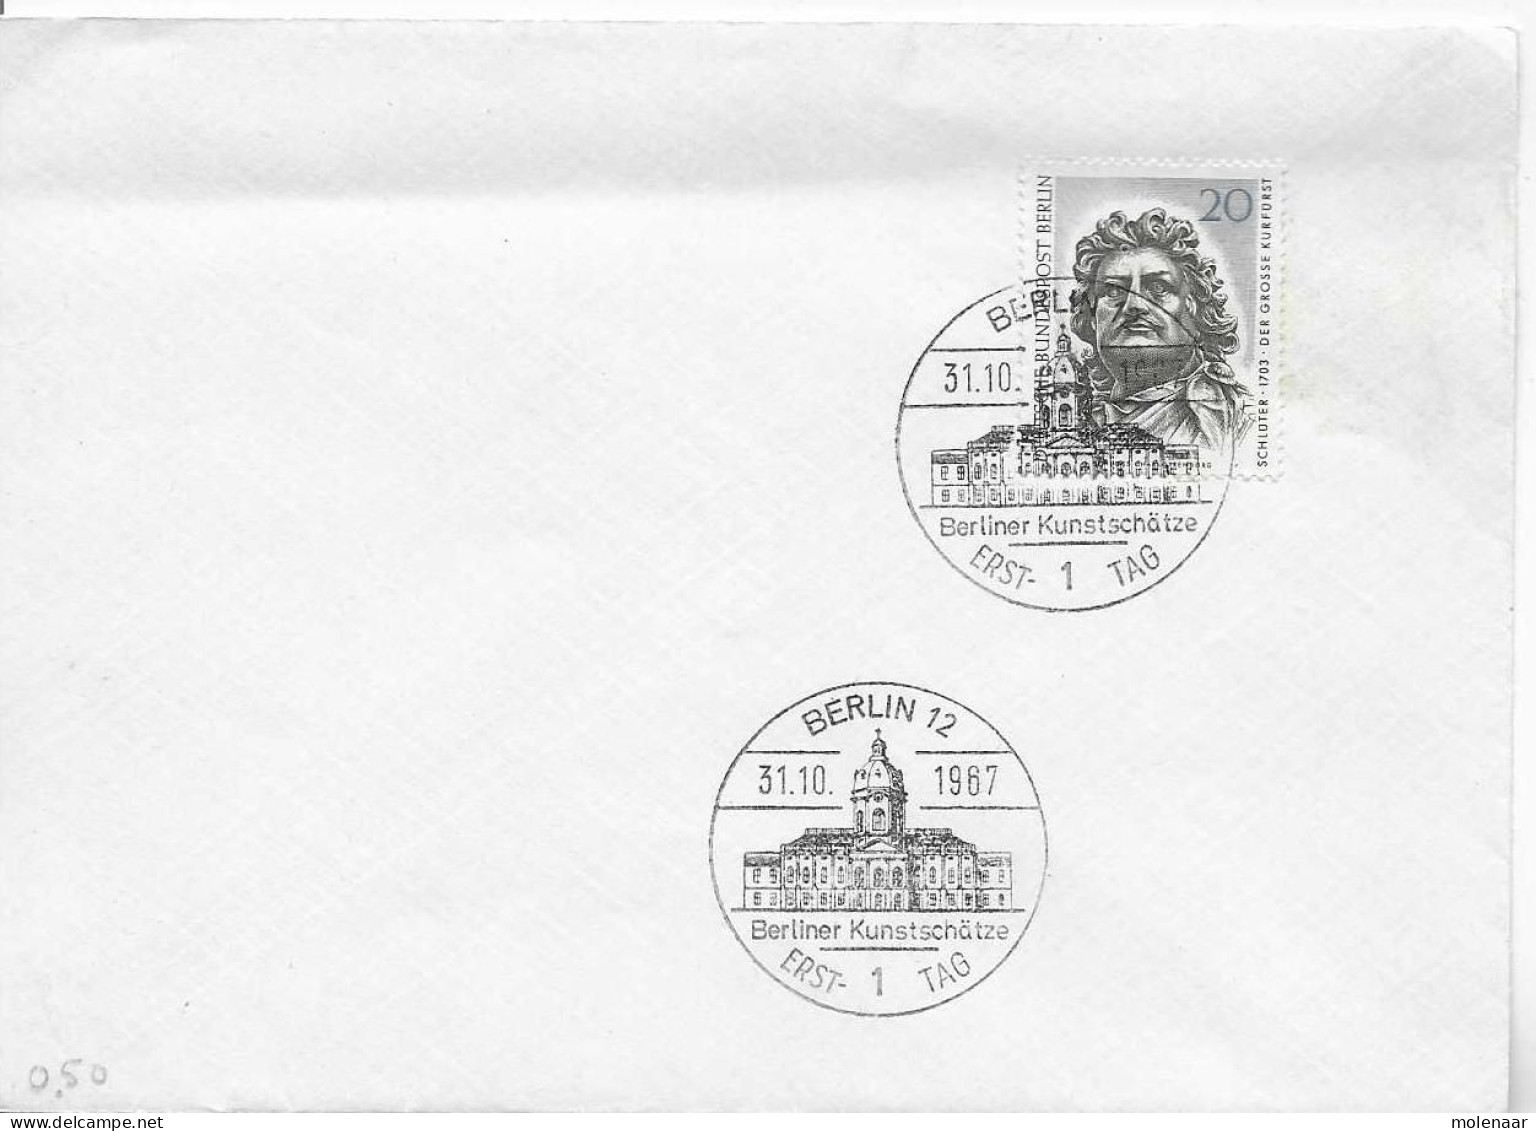 Postzegels > Europa > Duitsland > Berlijn > 1e Dag FDC (brieven) > 1948-1970 Met No. 303 (17155) - Blokken